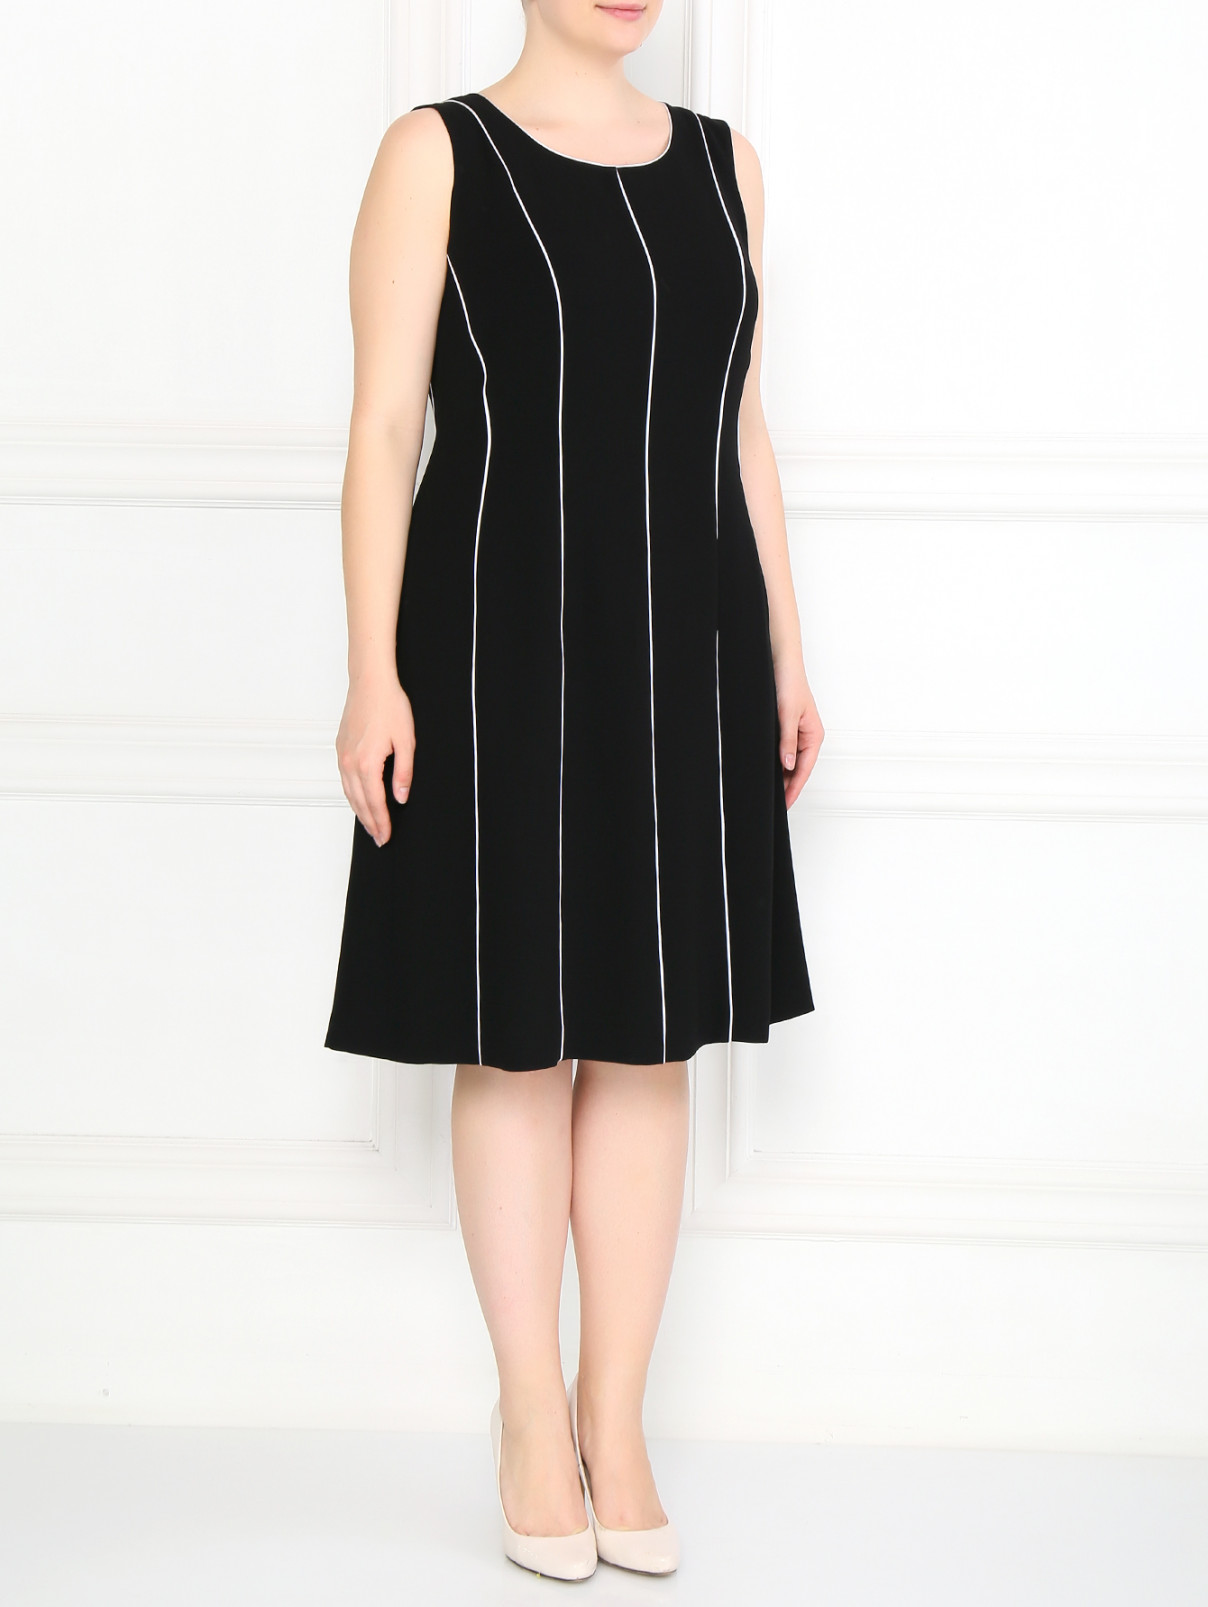 Платье-футляр в комплекте с рукавами Marina Rinaldi  –  Модель Общий вид  – Цвет:  Черный